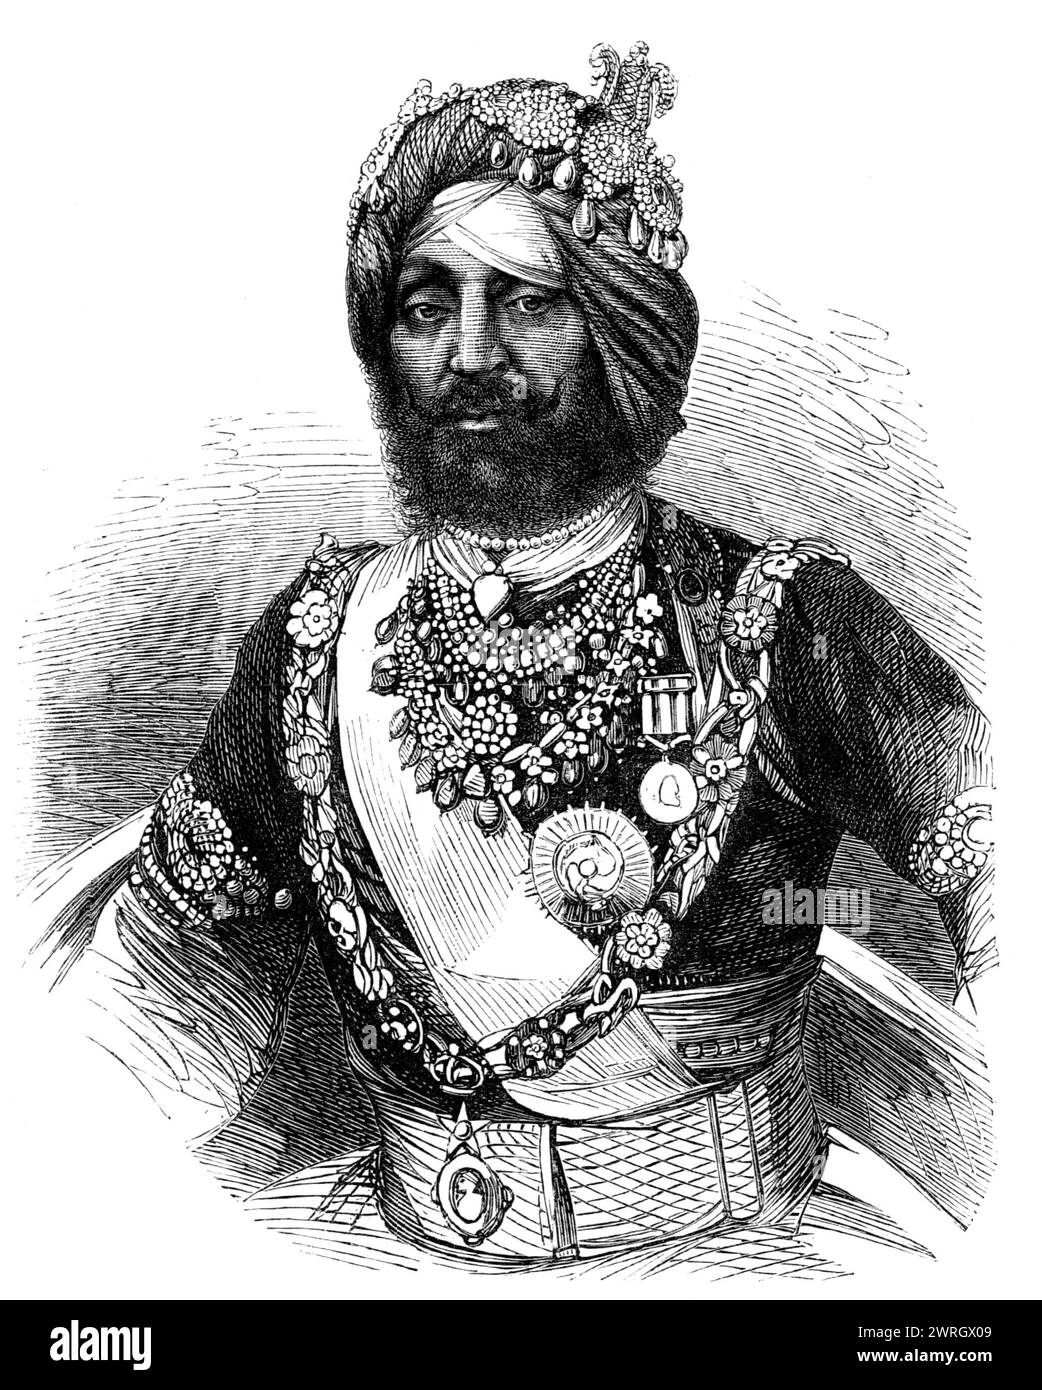 Il Rajah di Kapoorthalla, Cavaliere dell'ordine della Stella dell'India, 1864. "Il Rajah Randhir Singh, di Kapoorthalla, è uno dei principi del Punjaub che Sir John Lawrence, Governatore generale dell'India, ha premiato soprattutto i suoi pari e connazionali per i suoi leali servizi alla regina Vittoria nel prestare aiuto per reprimere l'ammutinamento e la ribellione del 1857. Al Grand durbar, o assemblea, che si svolse a Lahore il 17 ottobre... il Rajah fu solennemente investito da Sir John Lawrence con l'ordine della Stella d'India, avendo già ricevuto dal governo di Lord Canning, Foto Stock